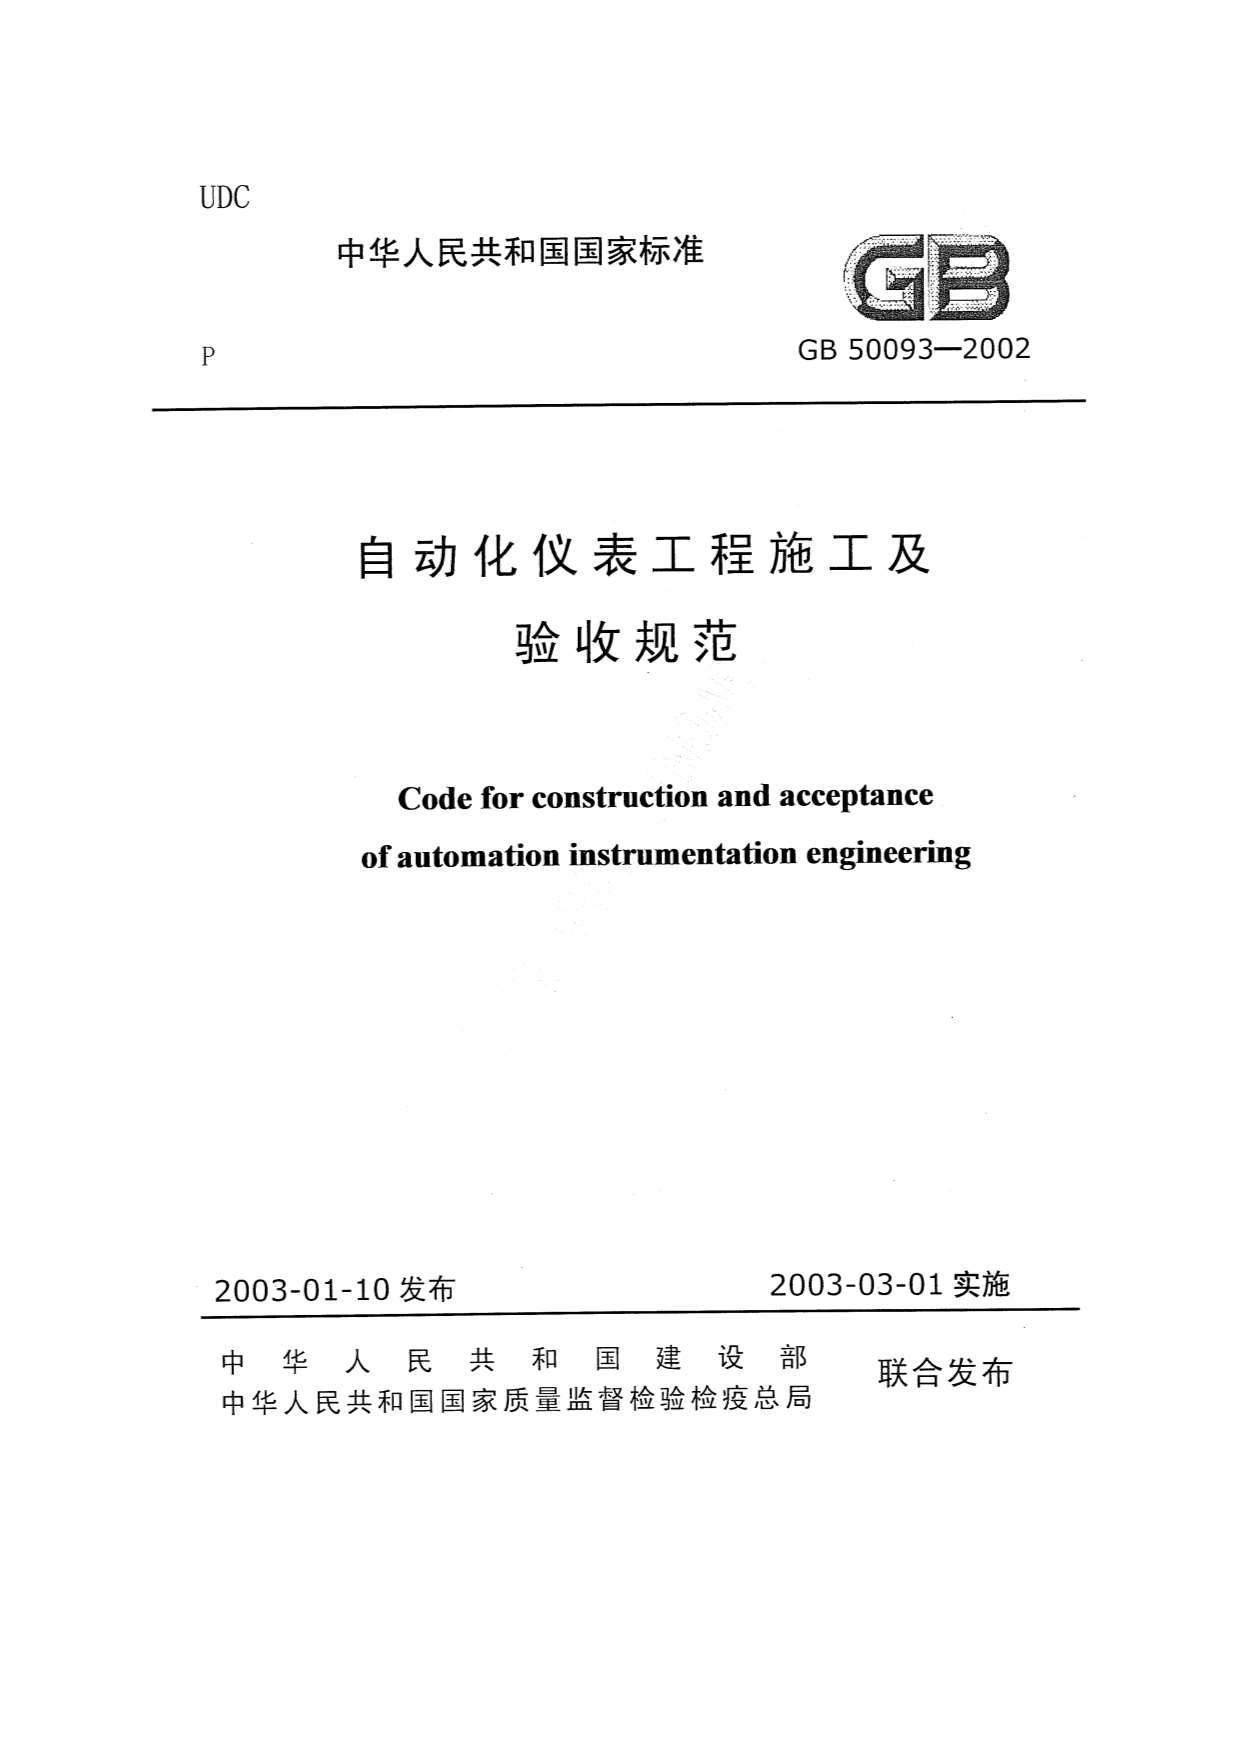 GB50093-2002自动化仪表工程施工和验收规范